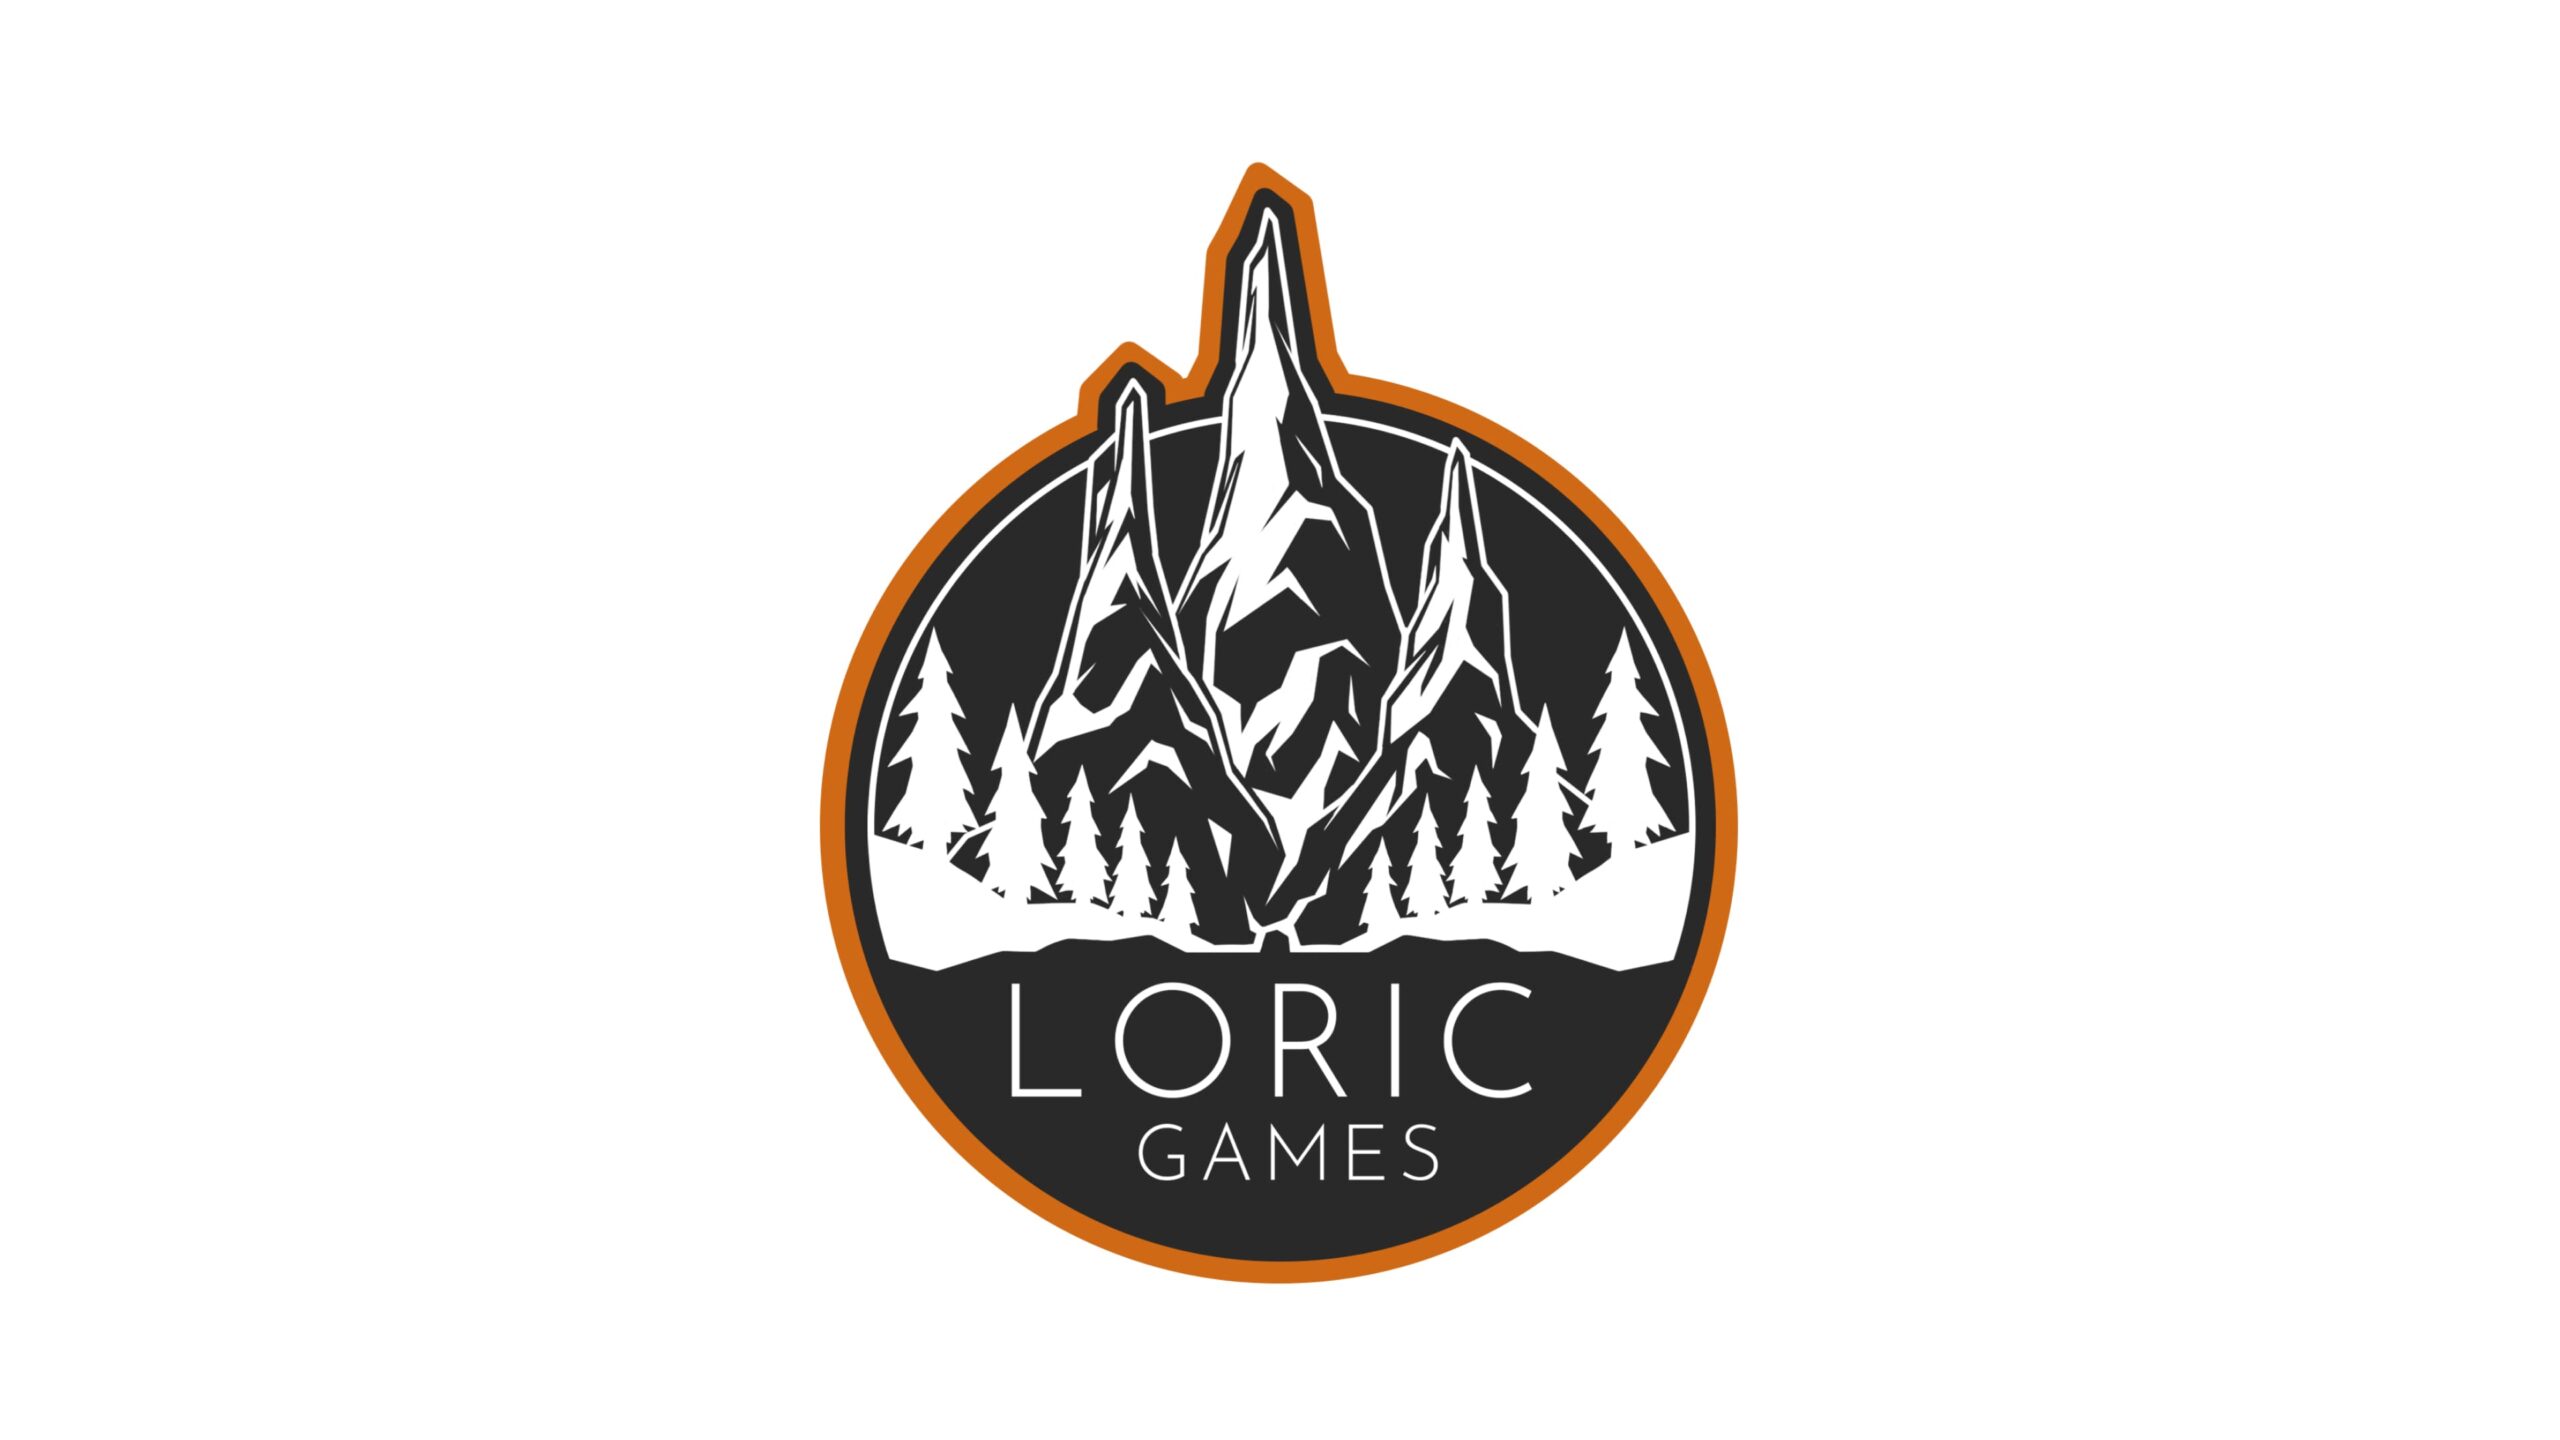 Loric Gamesが400万ドルの資金調達、Jeff HickmanをCPOに任命